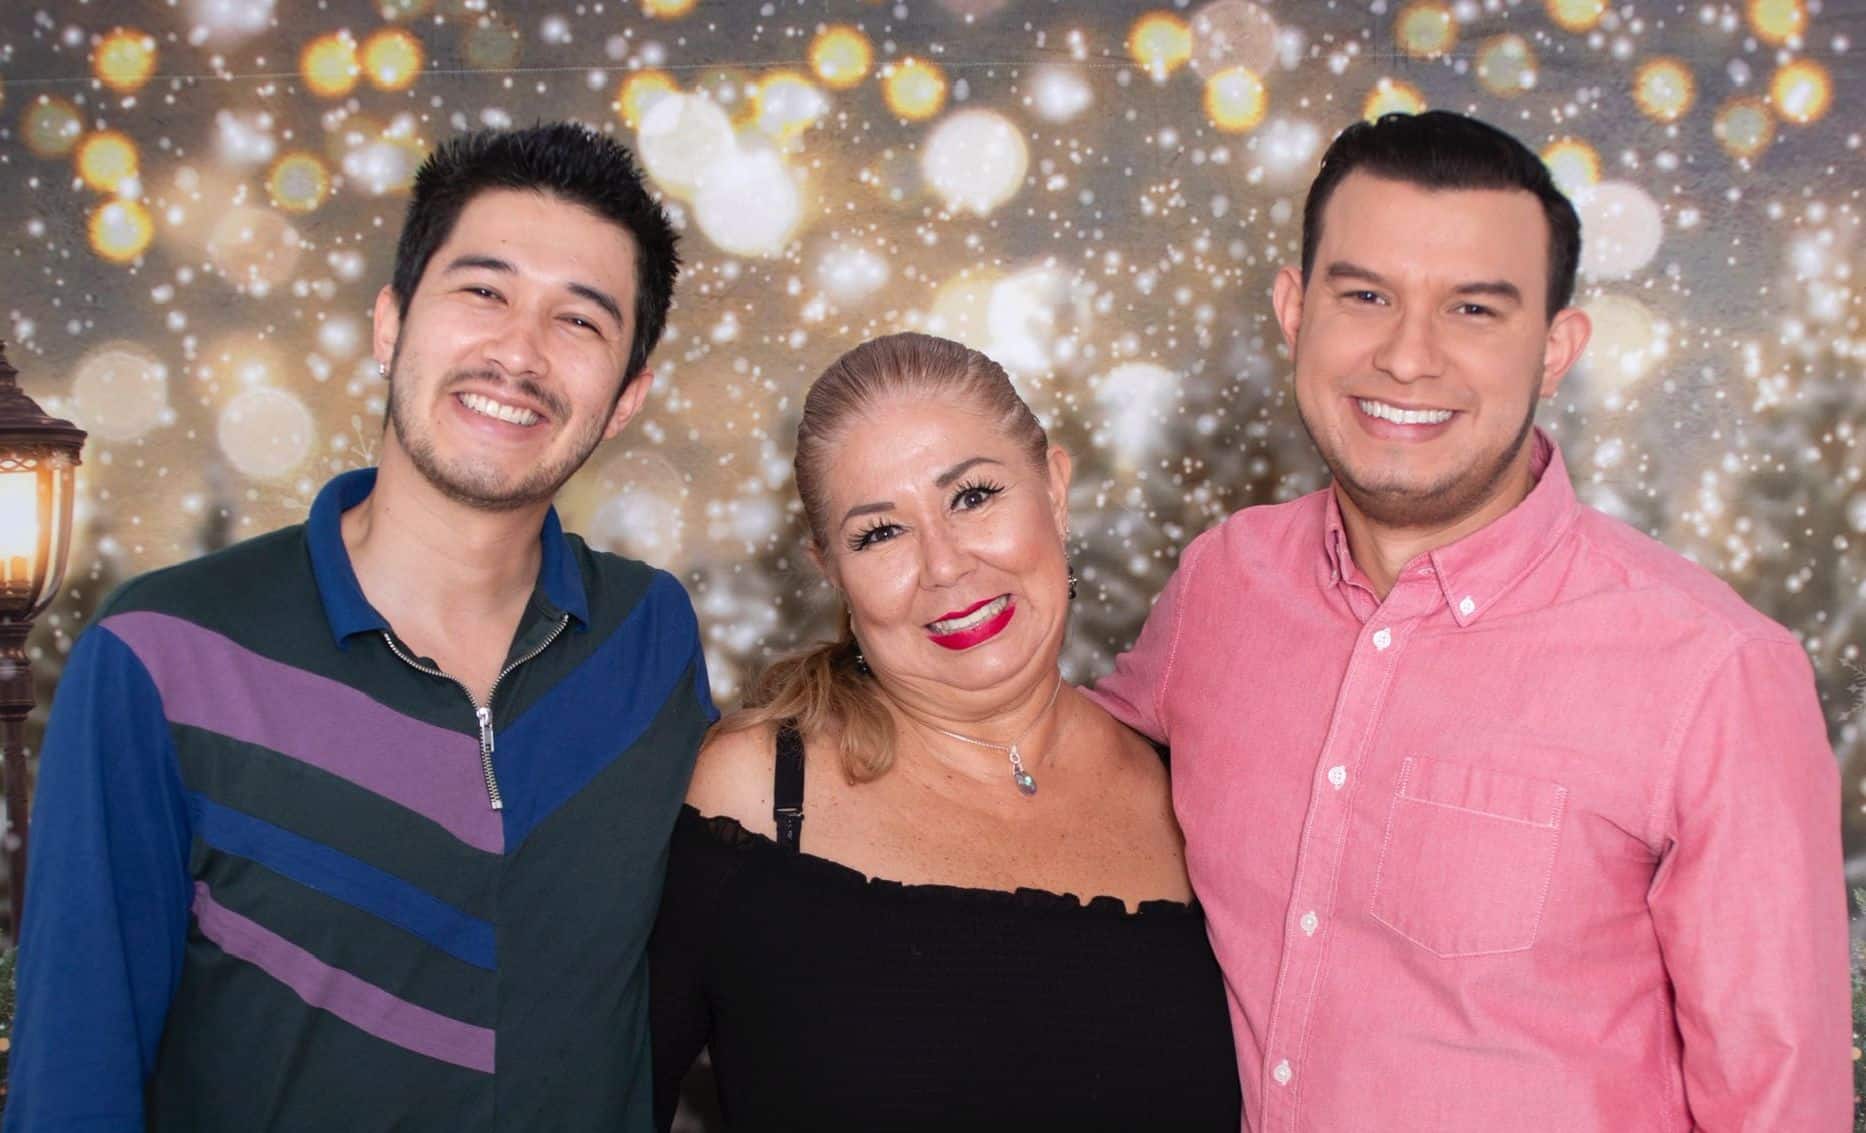 Periodista tico que trabaja en la cadena Telemundo vivió semanas de angustia por el cáncer de su mamá